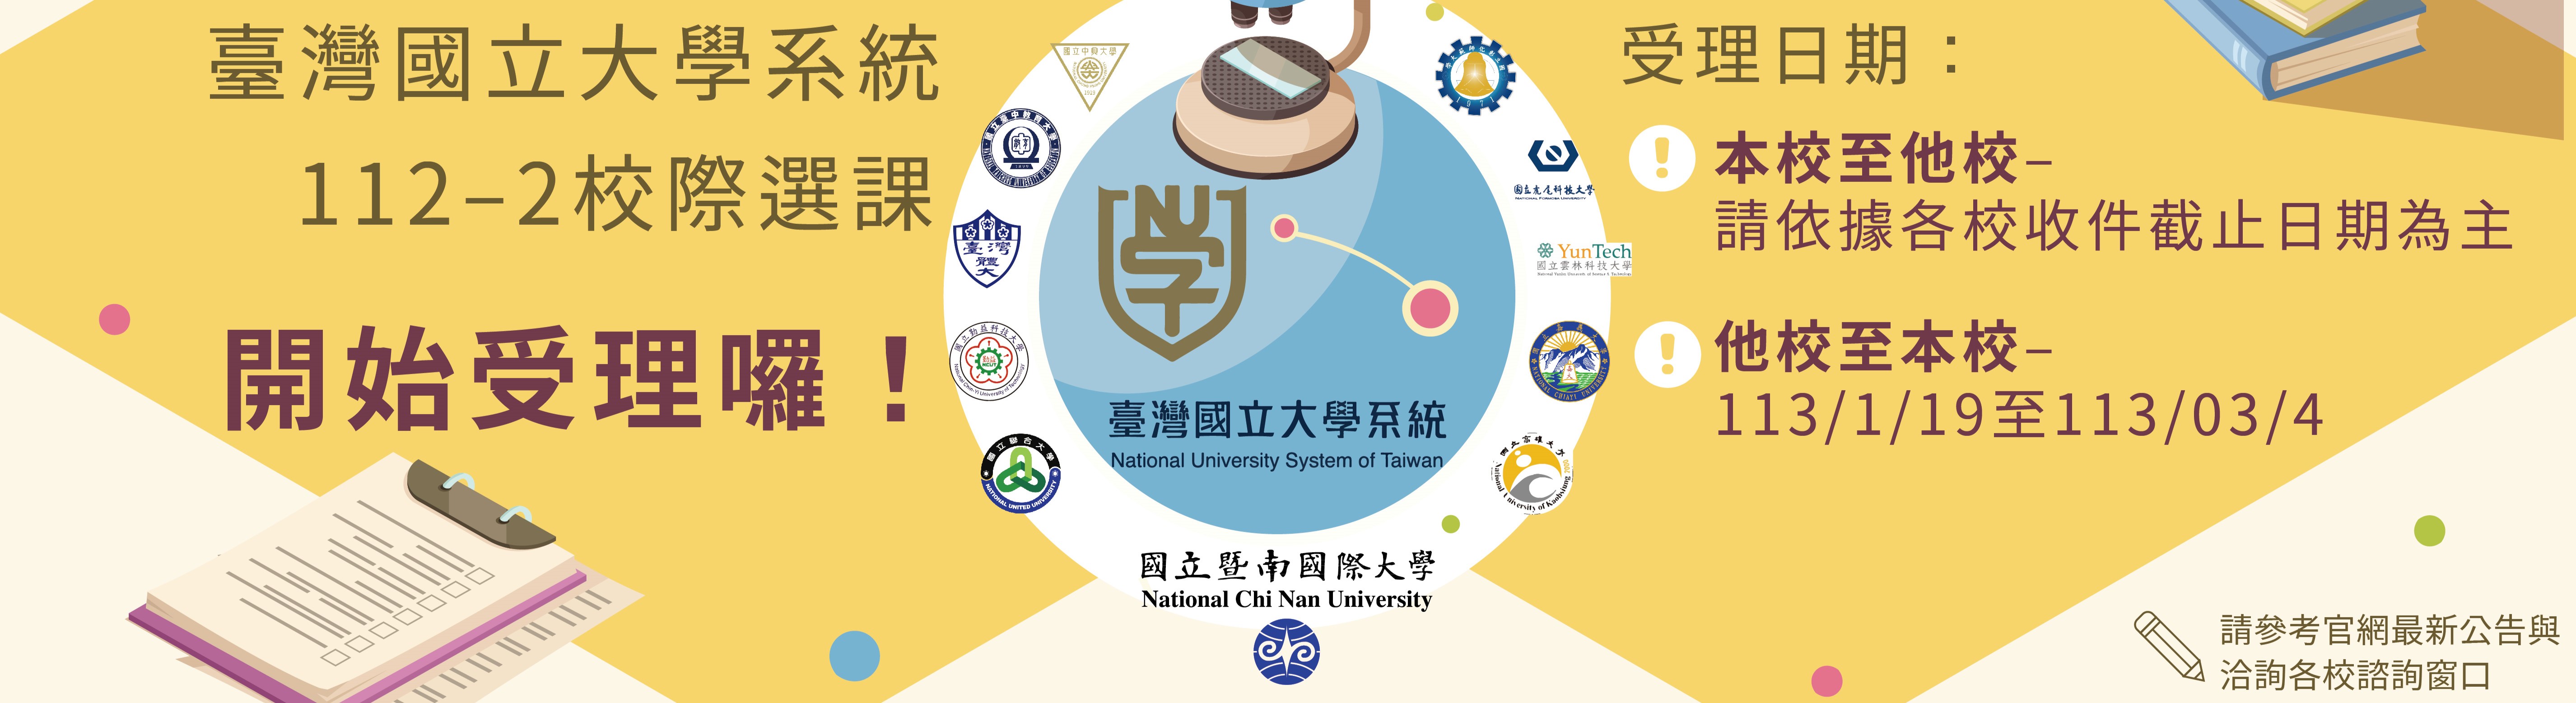 國立台灣大學系統